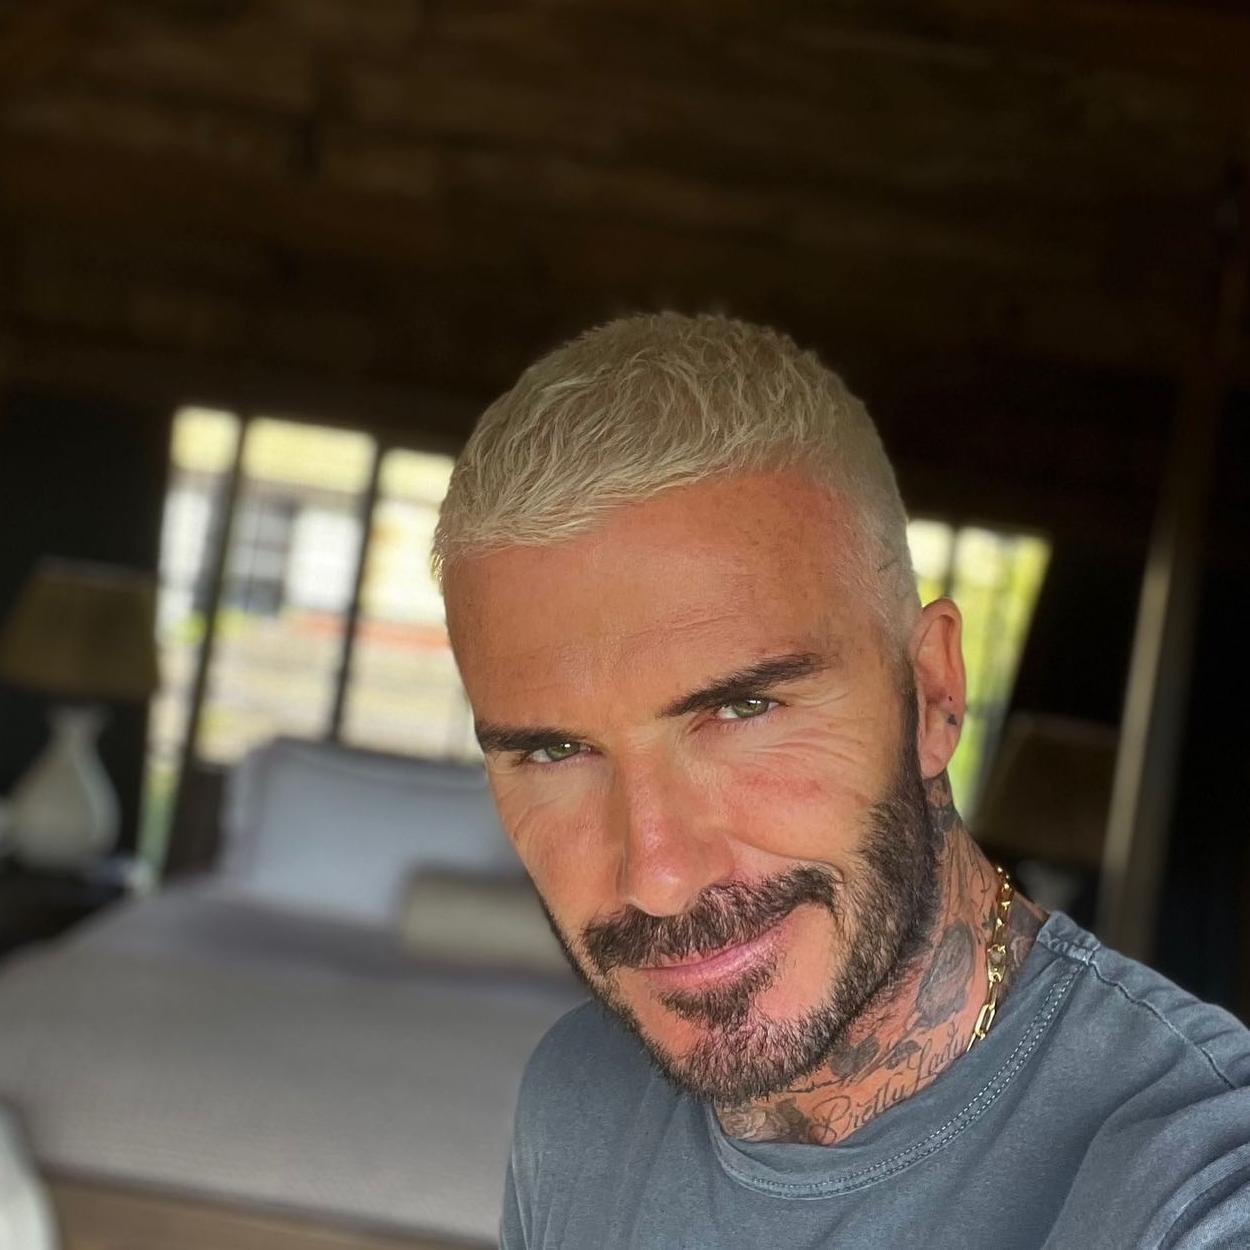 David Beckham en un selfie con el pelo corto teñido de rubio y barba corta